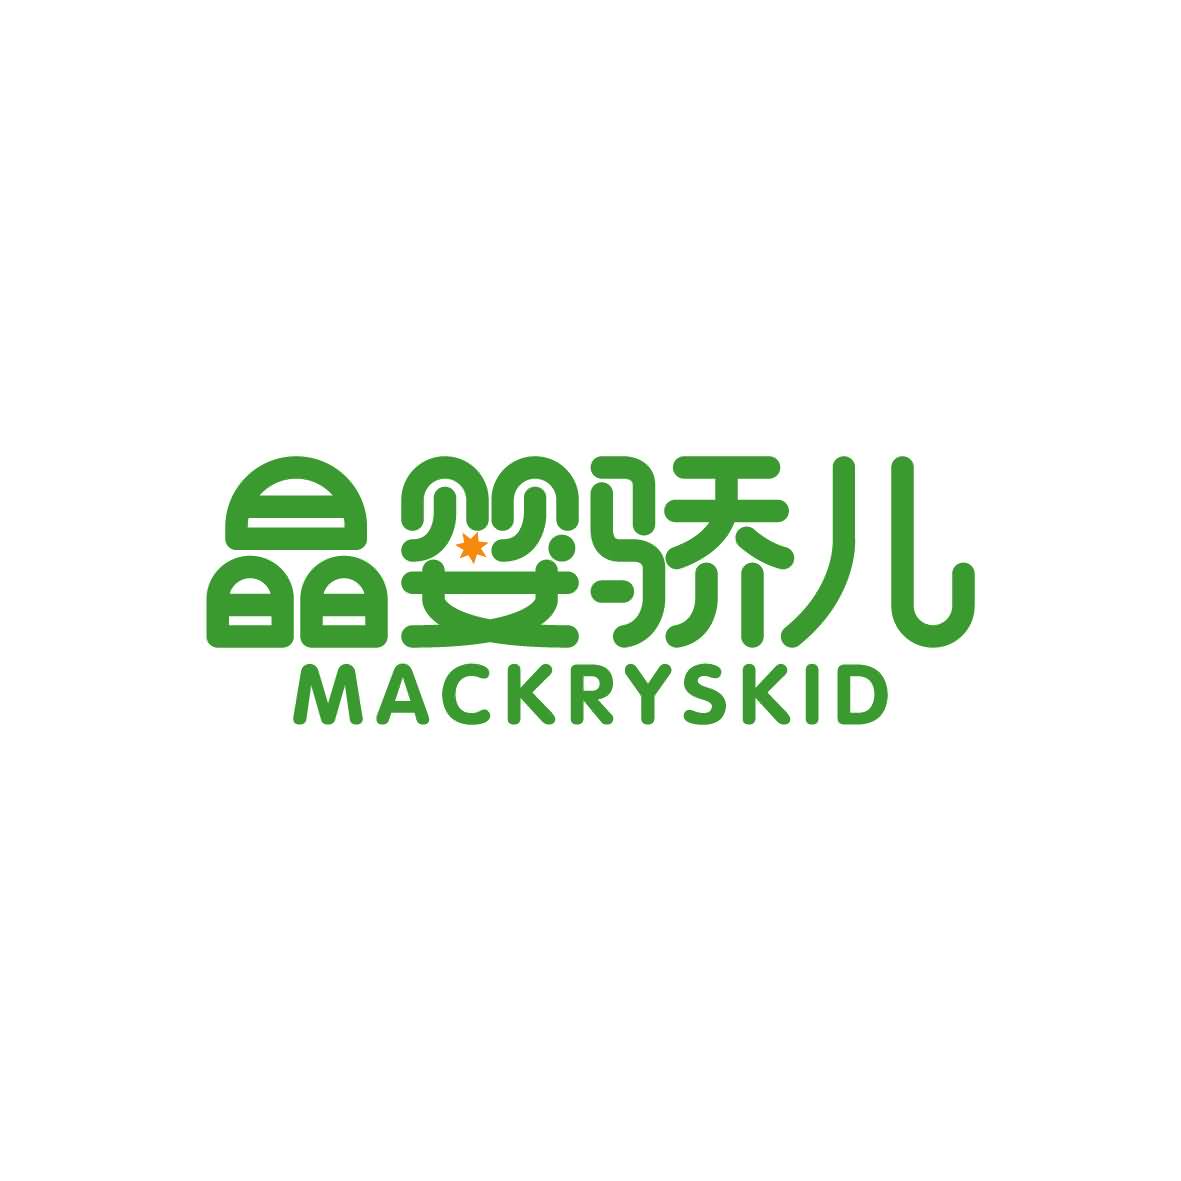 广州市舒哲电子商务商行商标晶婴骄儿 MACKRYSKID（43类）多少钱？